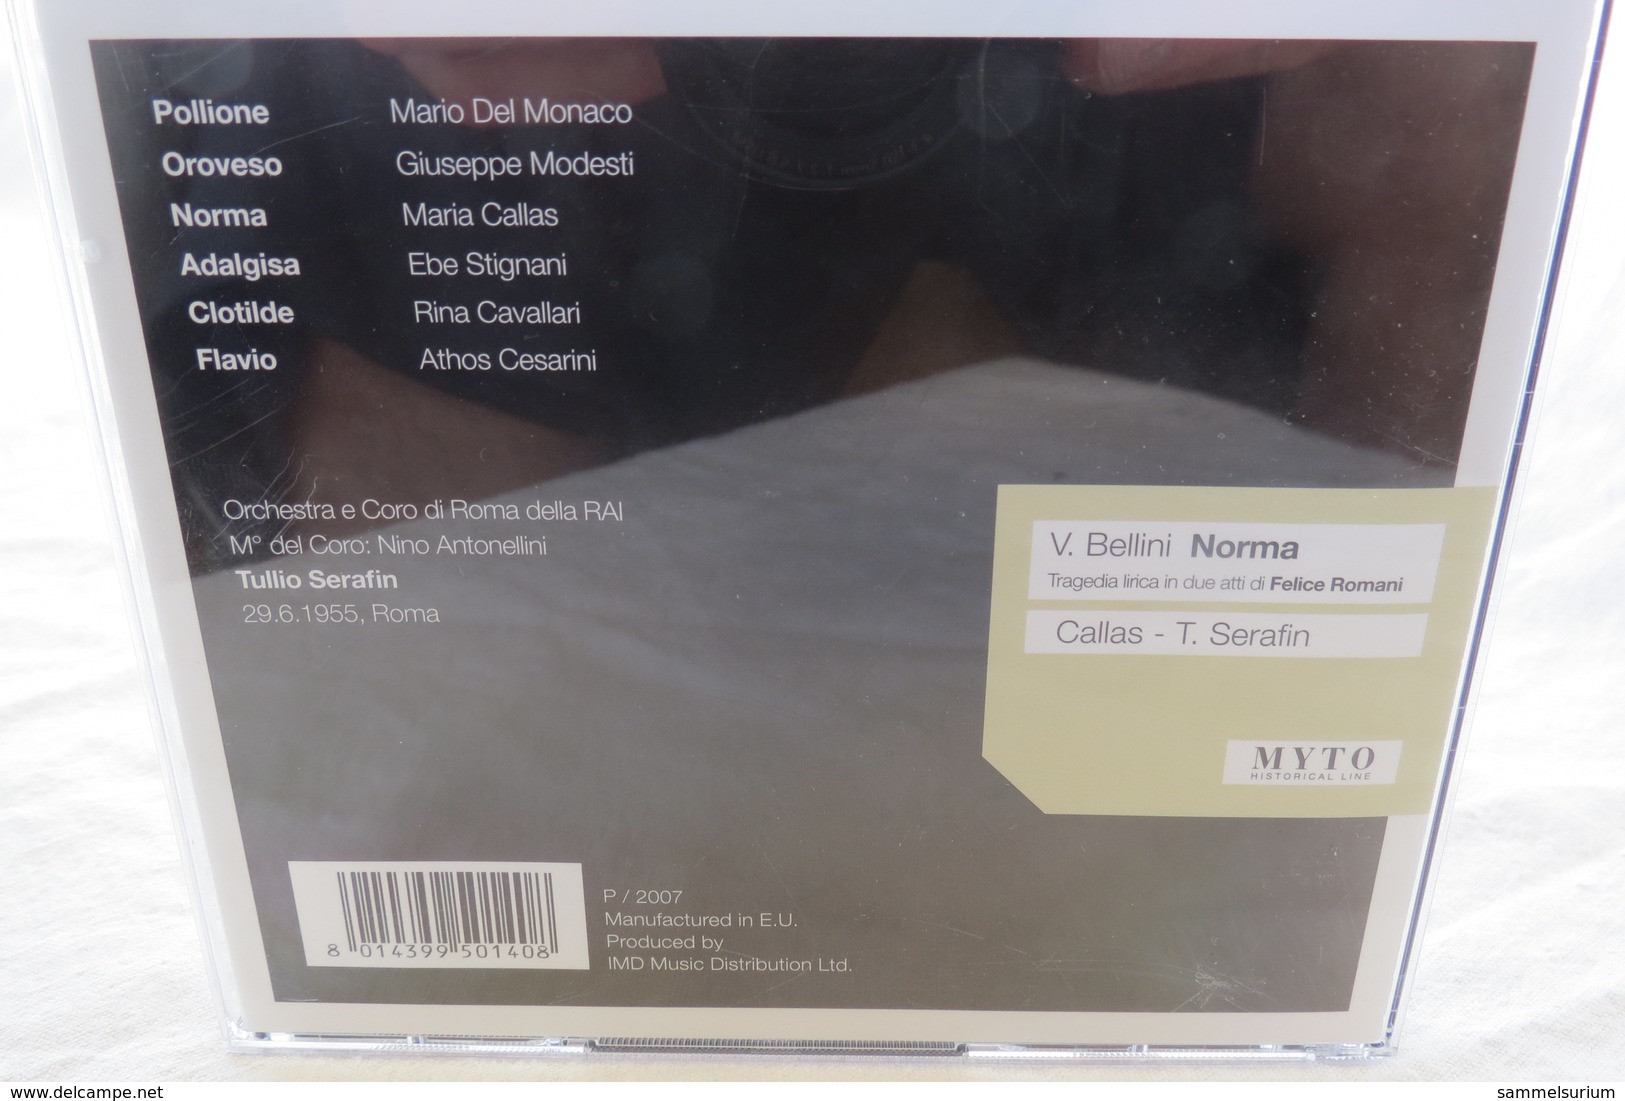 2 CDs "Vincenzo Bellini - Norma" M. Callas, Tullio Serafin - Oper & Operette